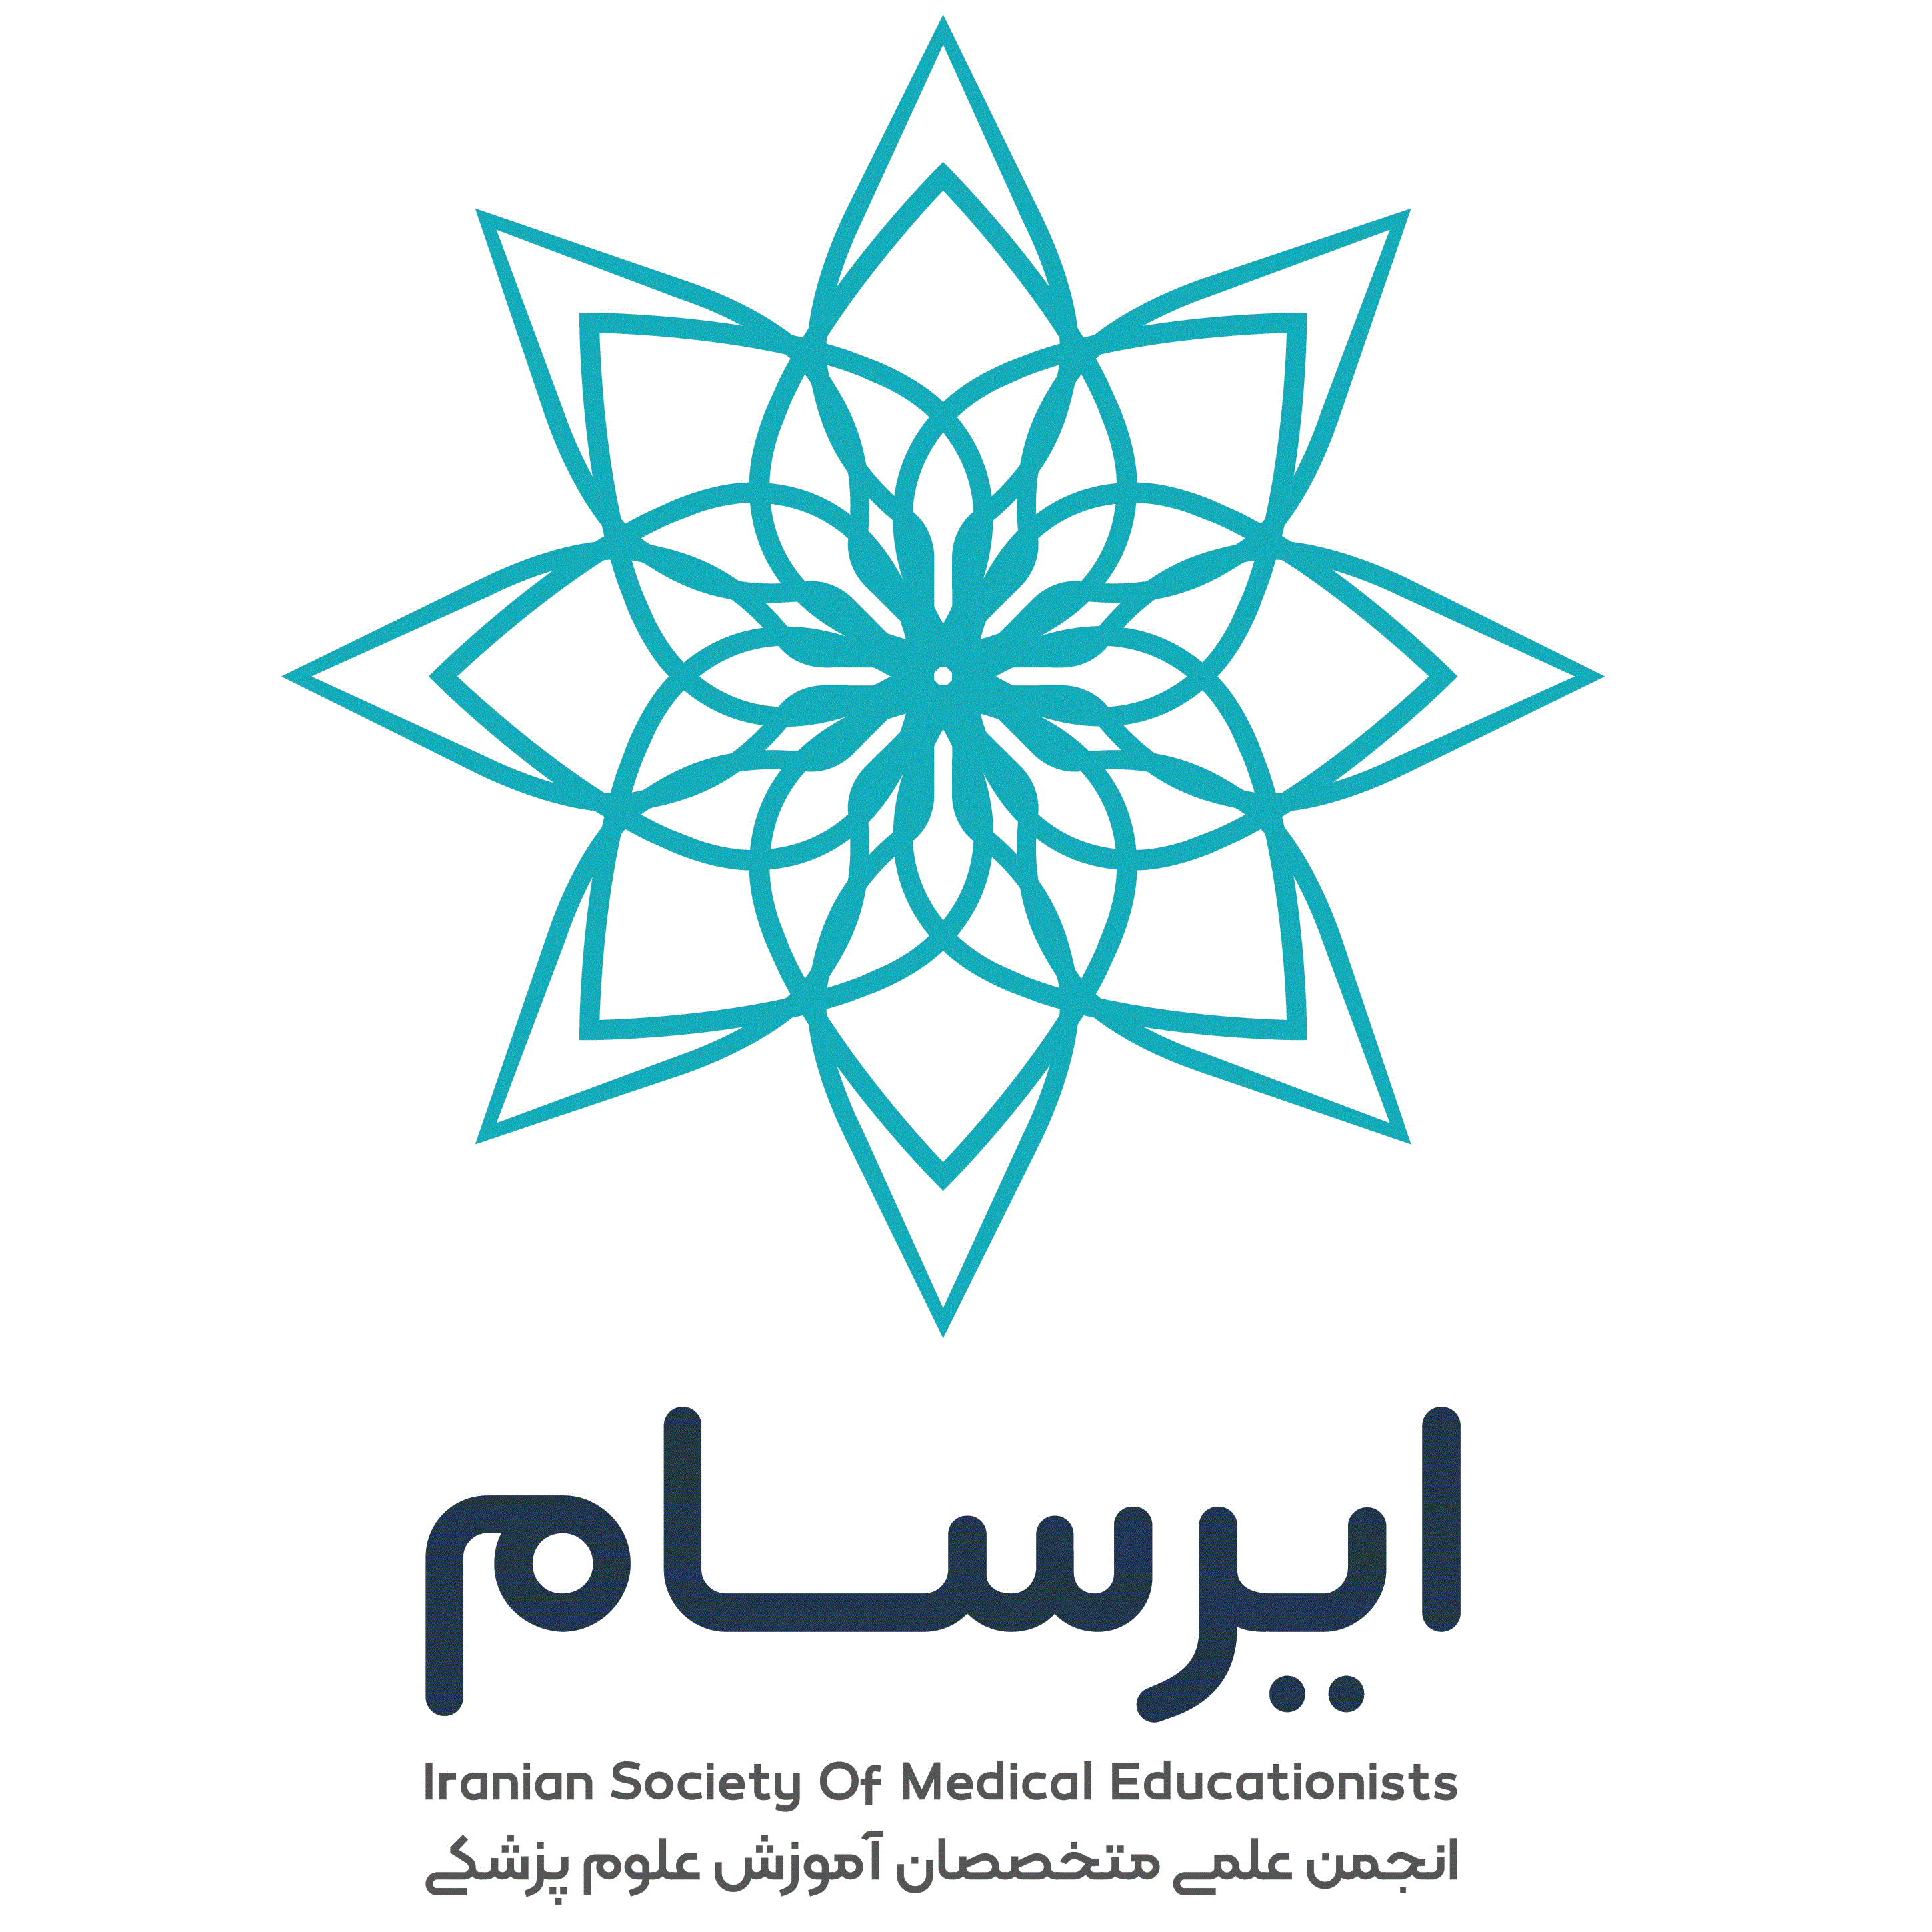 انجمن علمی متخصصان آموزش علوم پزشکی ایران